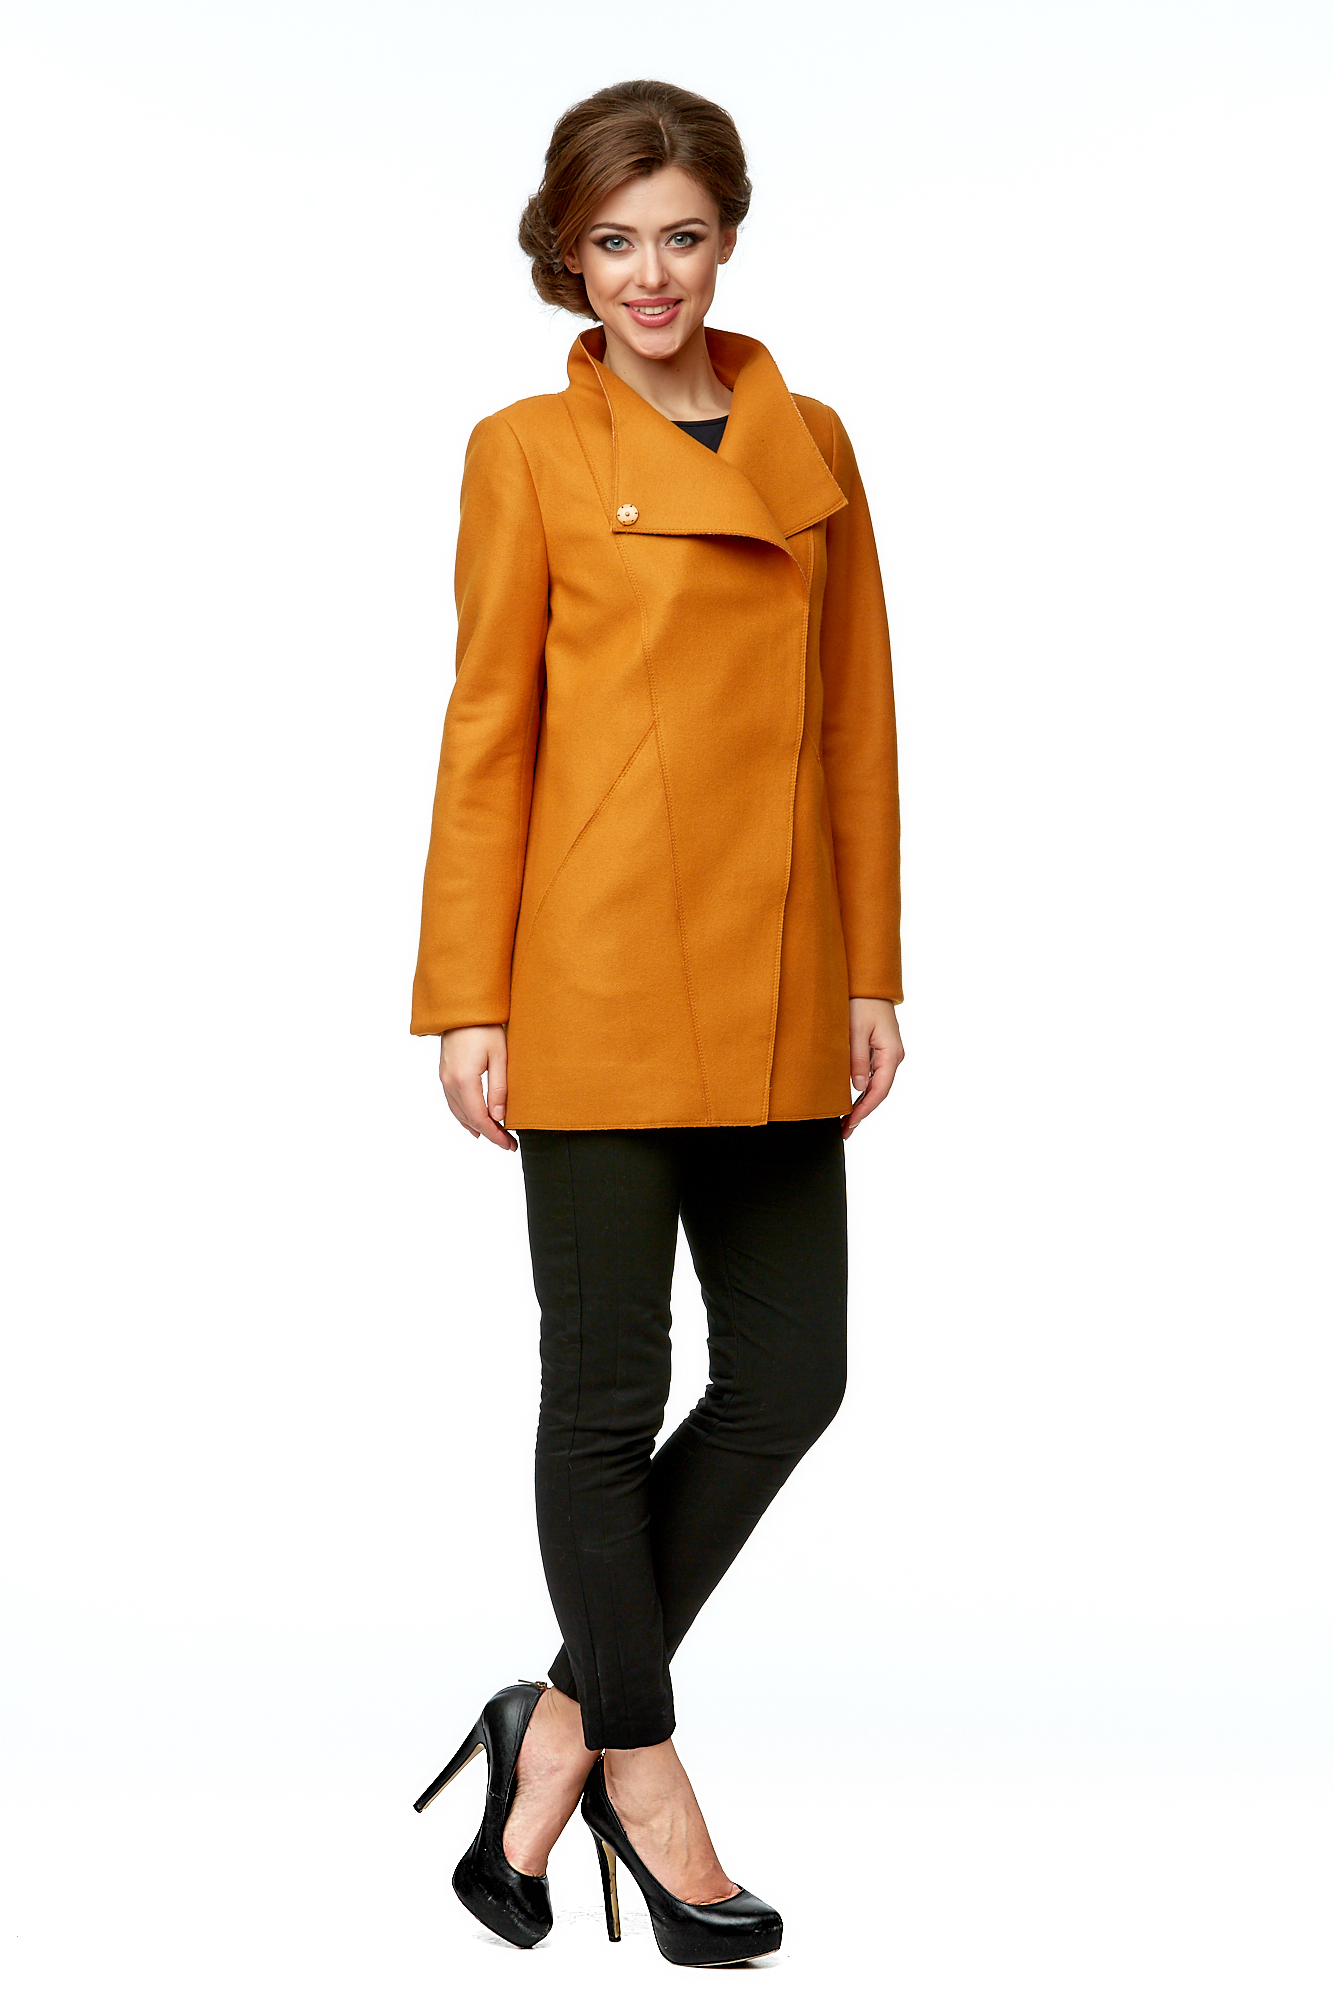 Женское пальто из текстиля с воротником 8002002-2